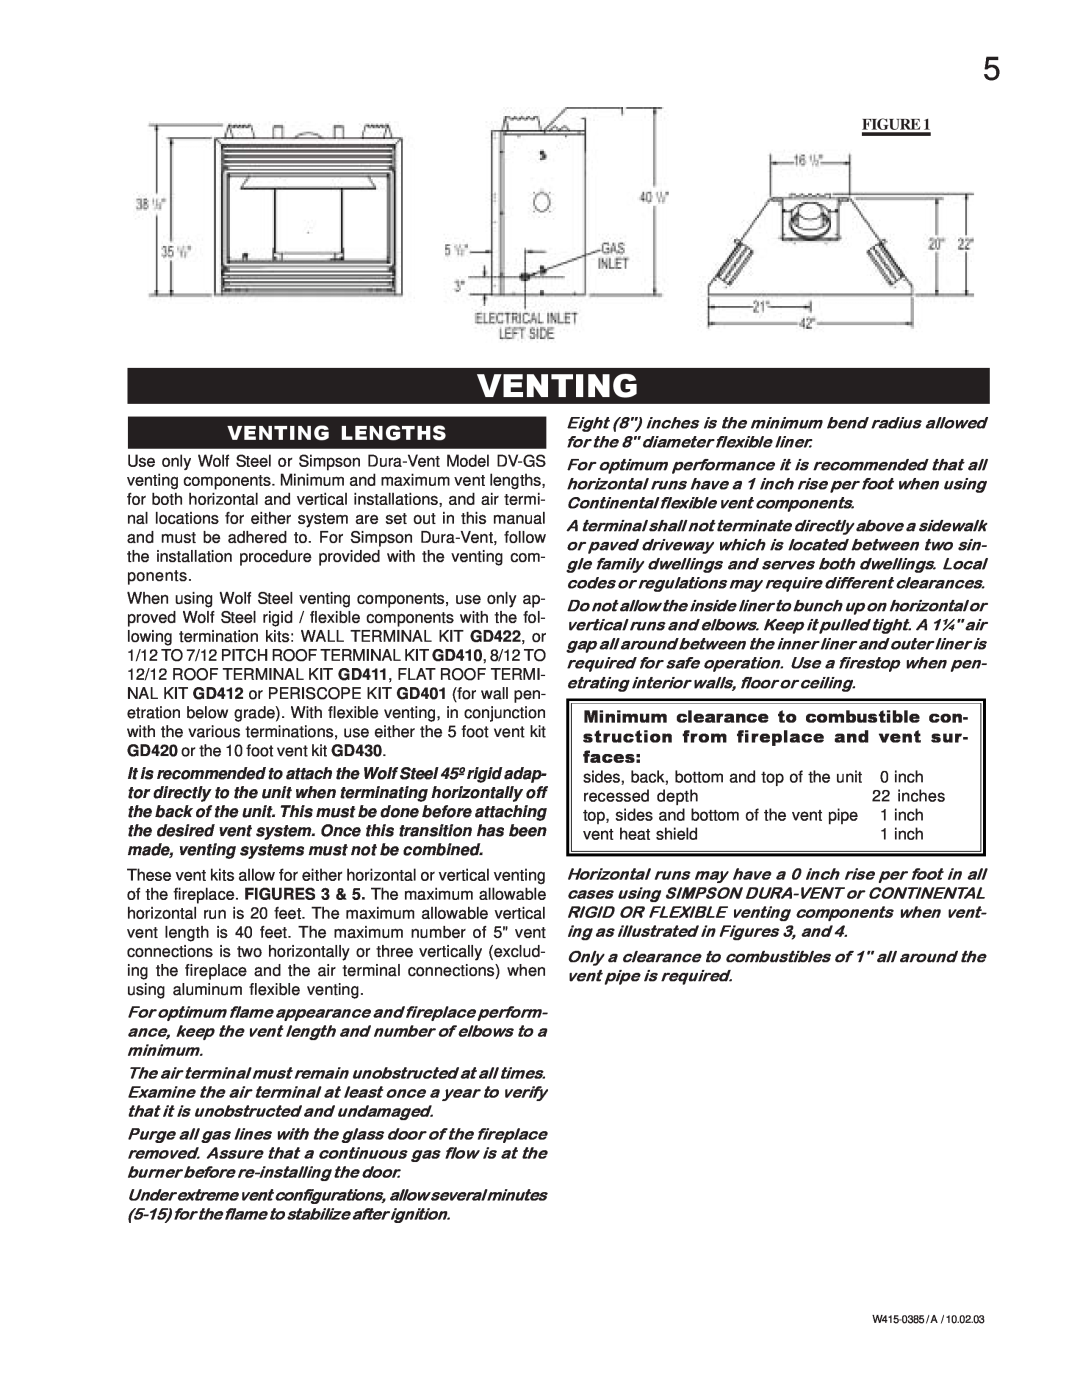 Continental BCDV42N, BCDV42P manual Venting Lengths 